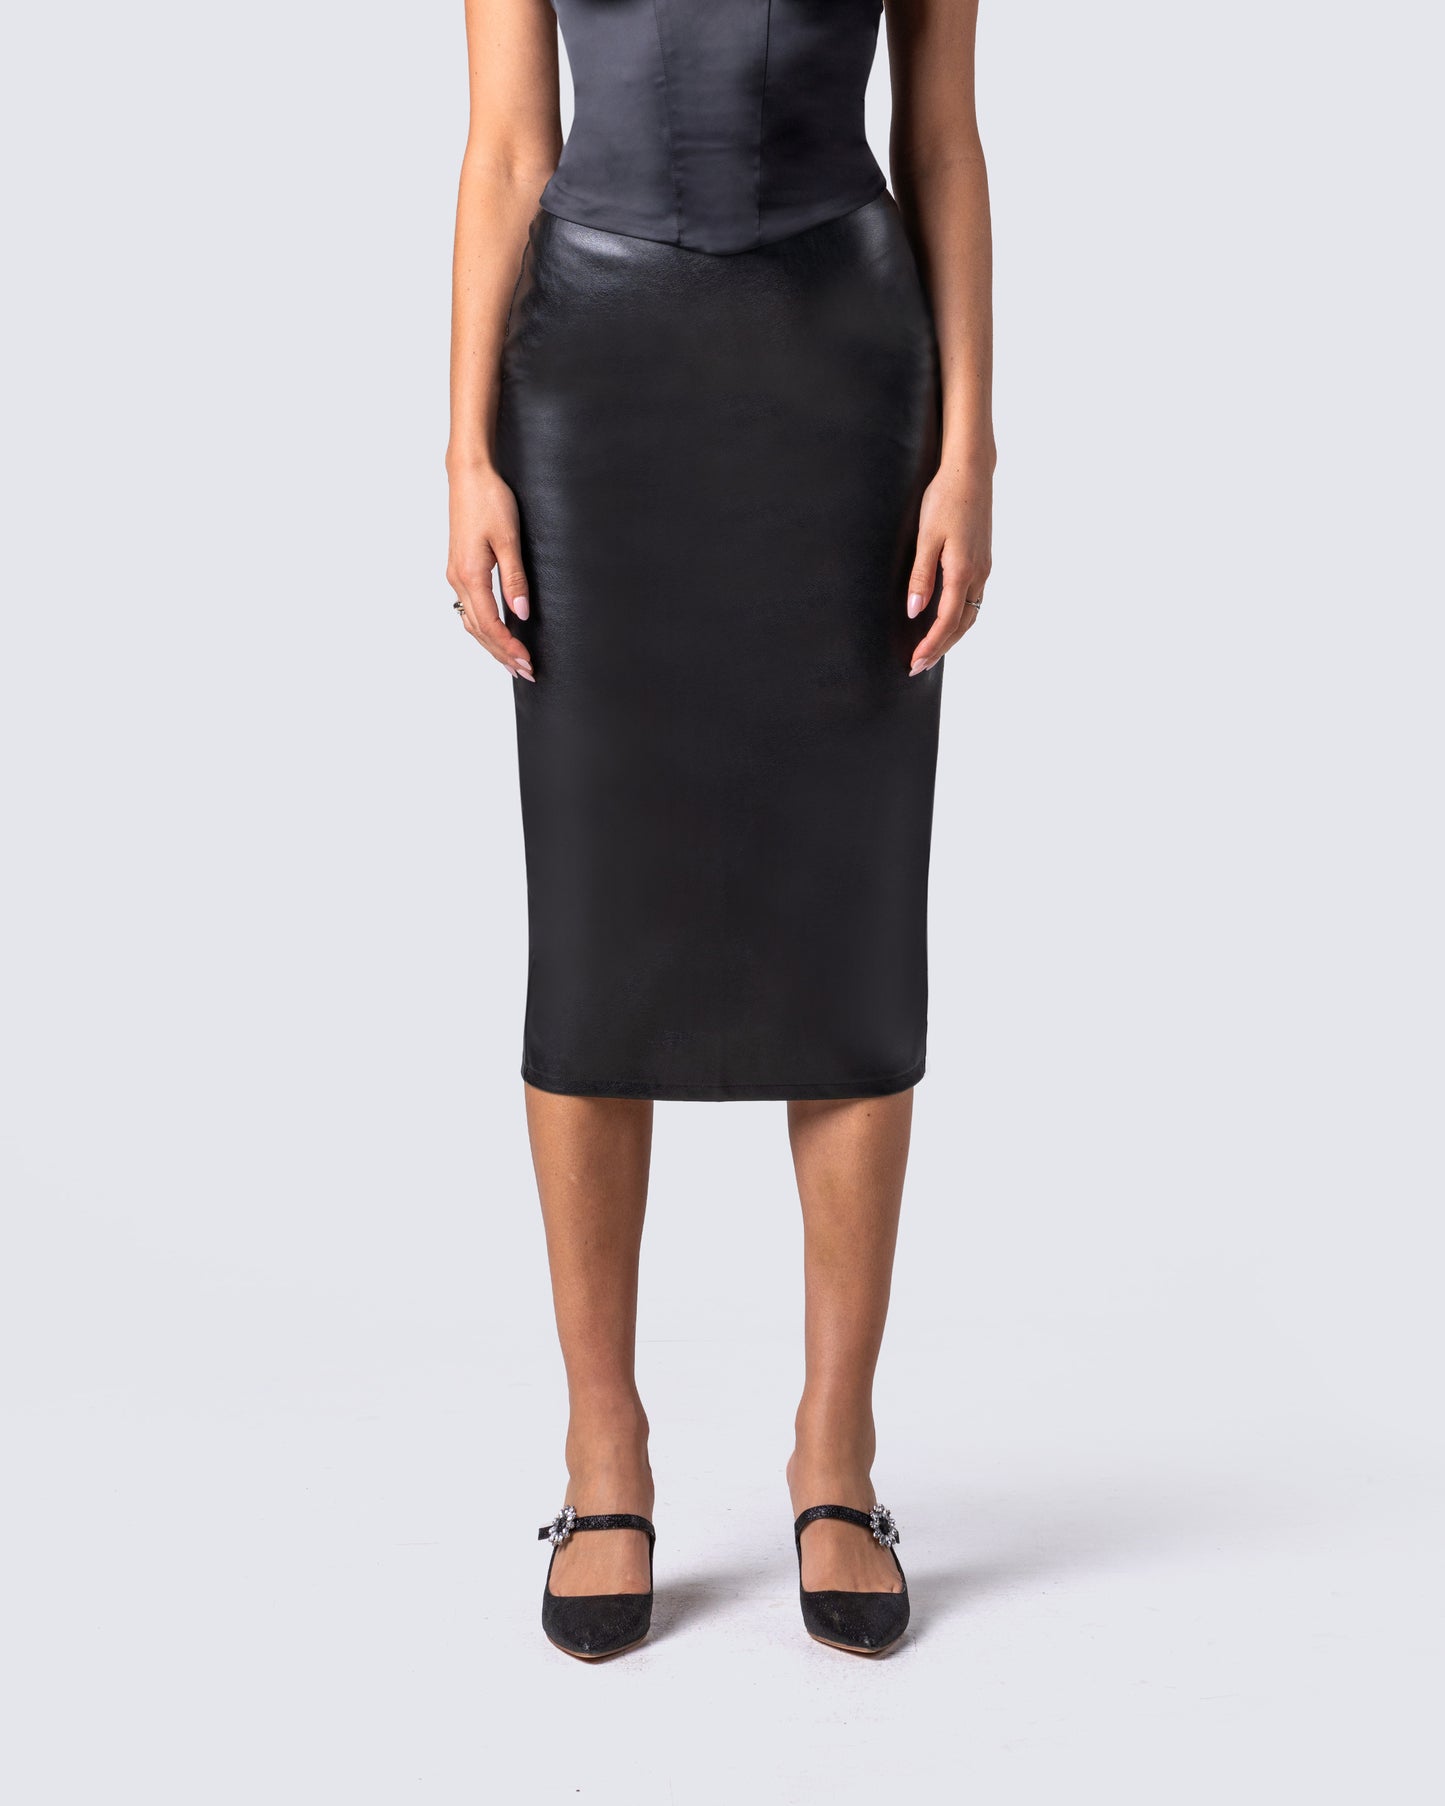 Badu Black Vegan Leather Skirt